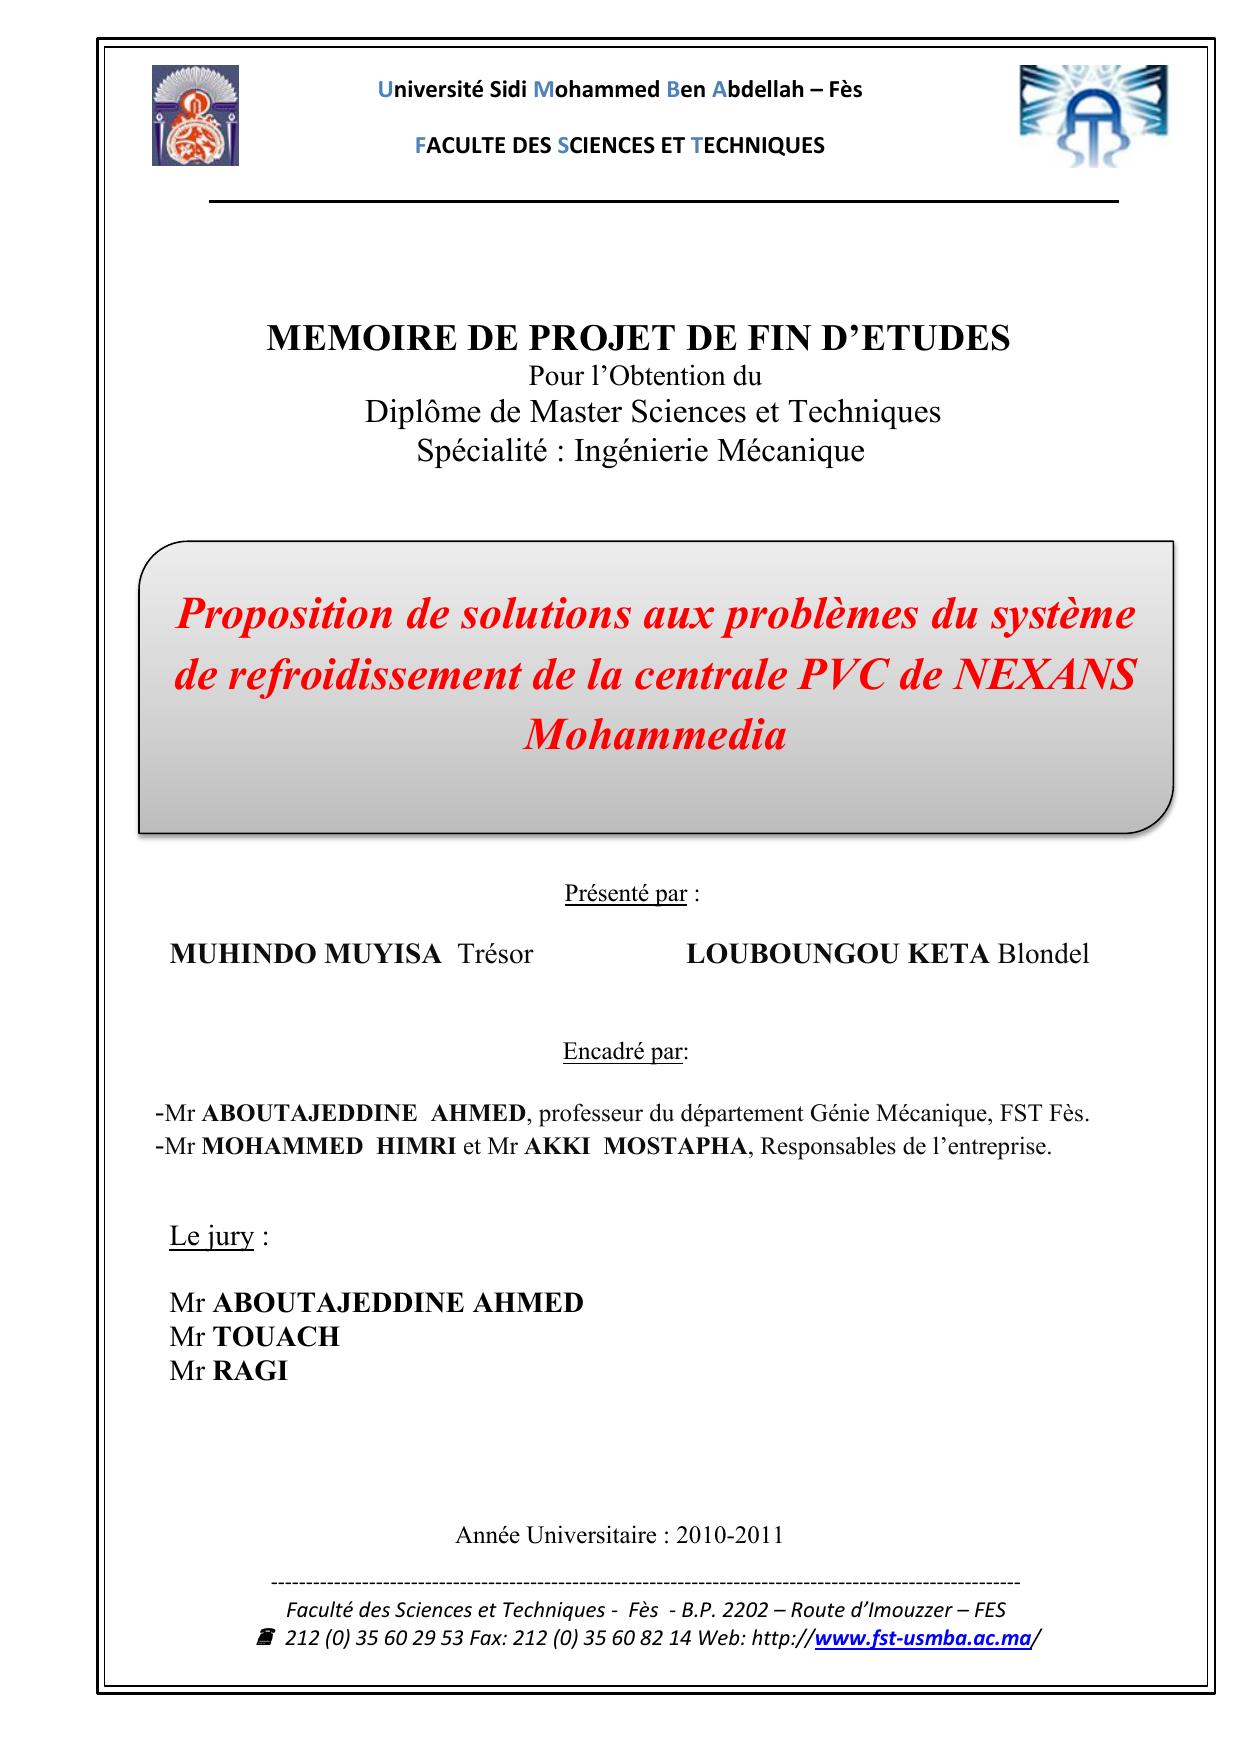 Proposition de solutions aux problèmes du système de refroidissement de la centrale PVC de NEXANS Mohammedia